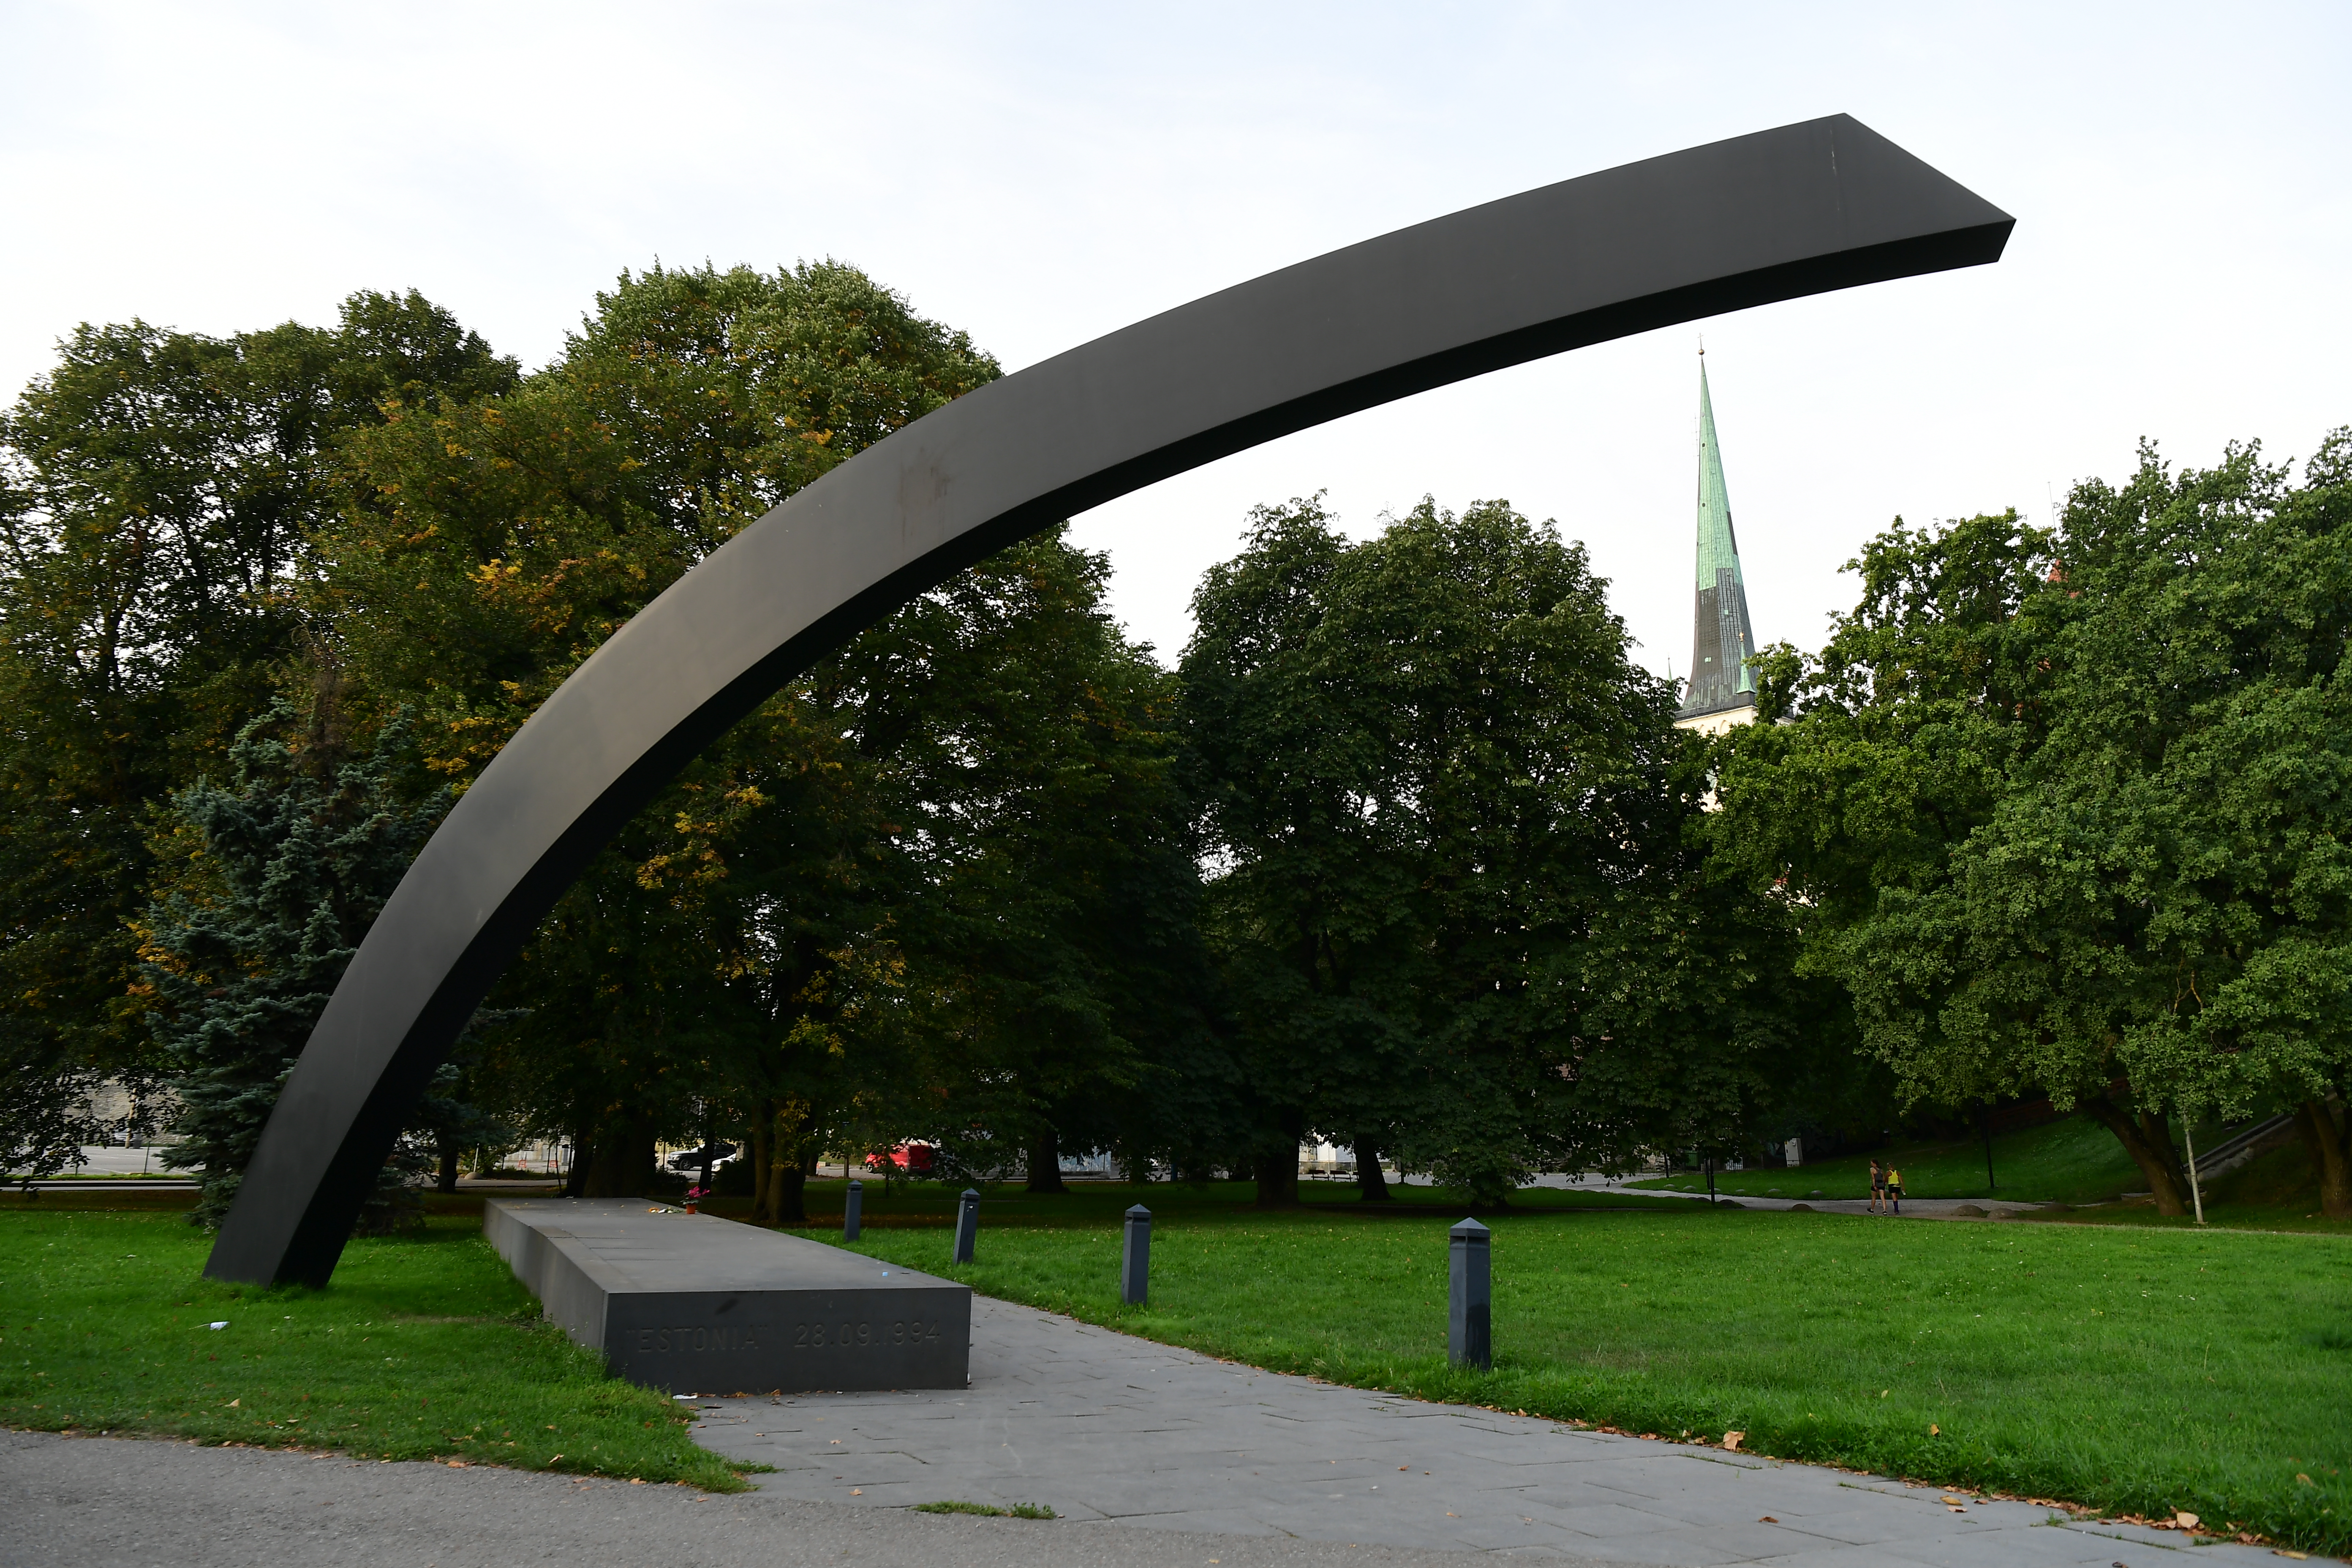 1994년 에스토니아호 침몰 참사 희생자 852명의 넋을 기리는 위령탑. 바닥의 비석에는 희생자 이름이 새겨져 있다.